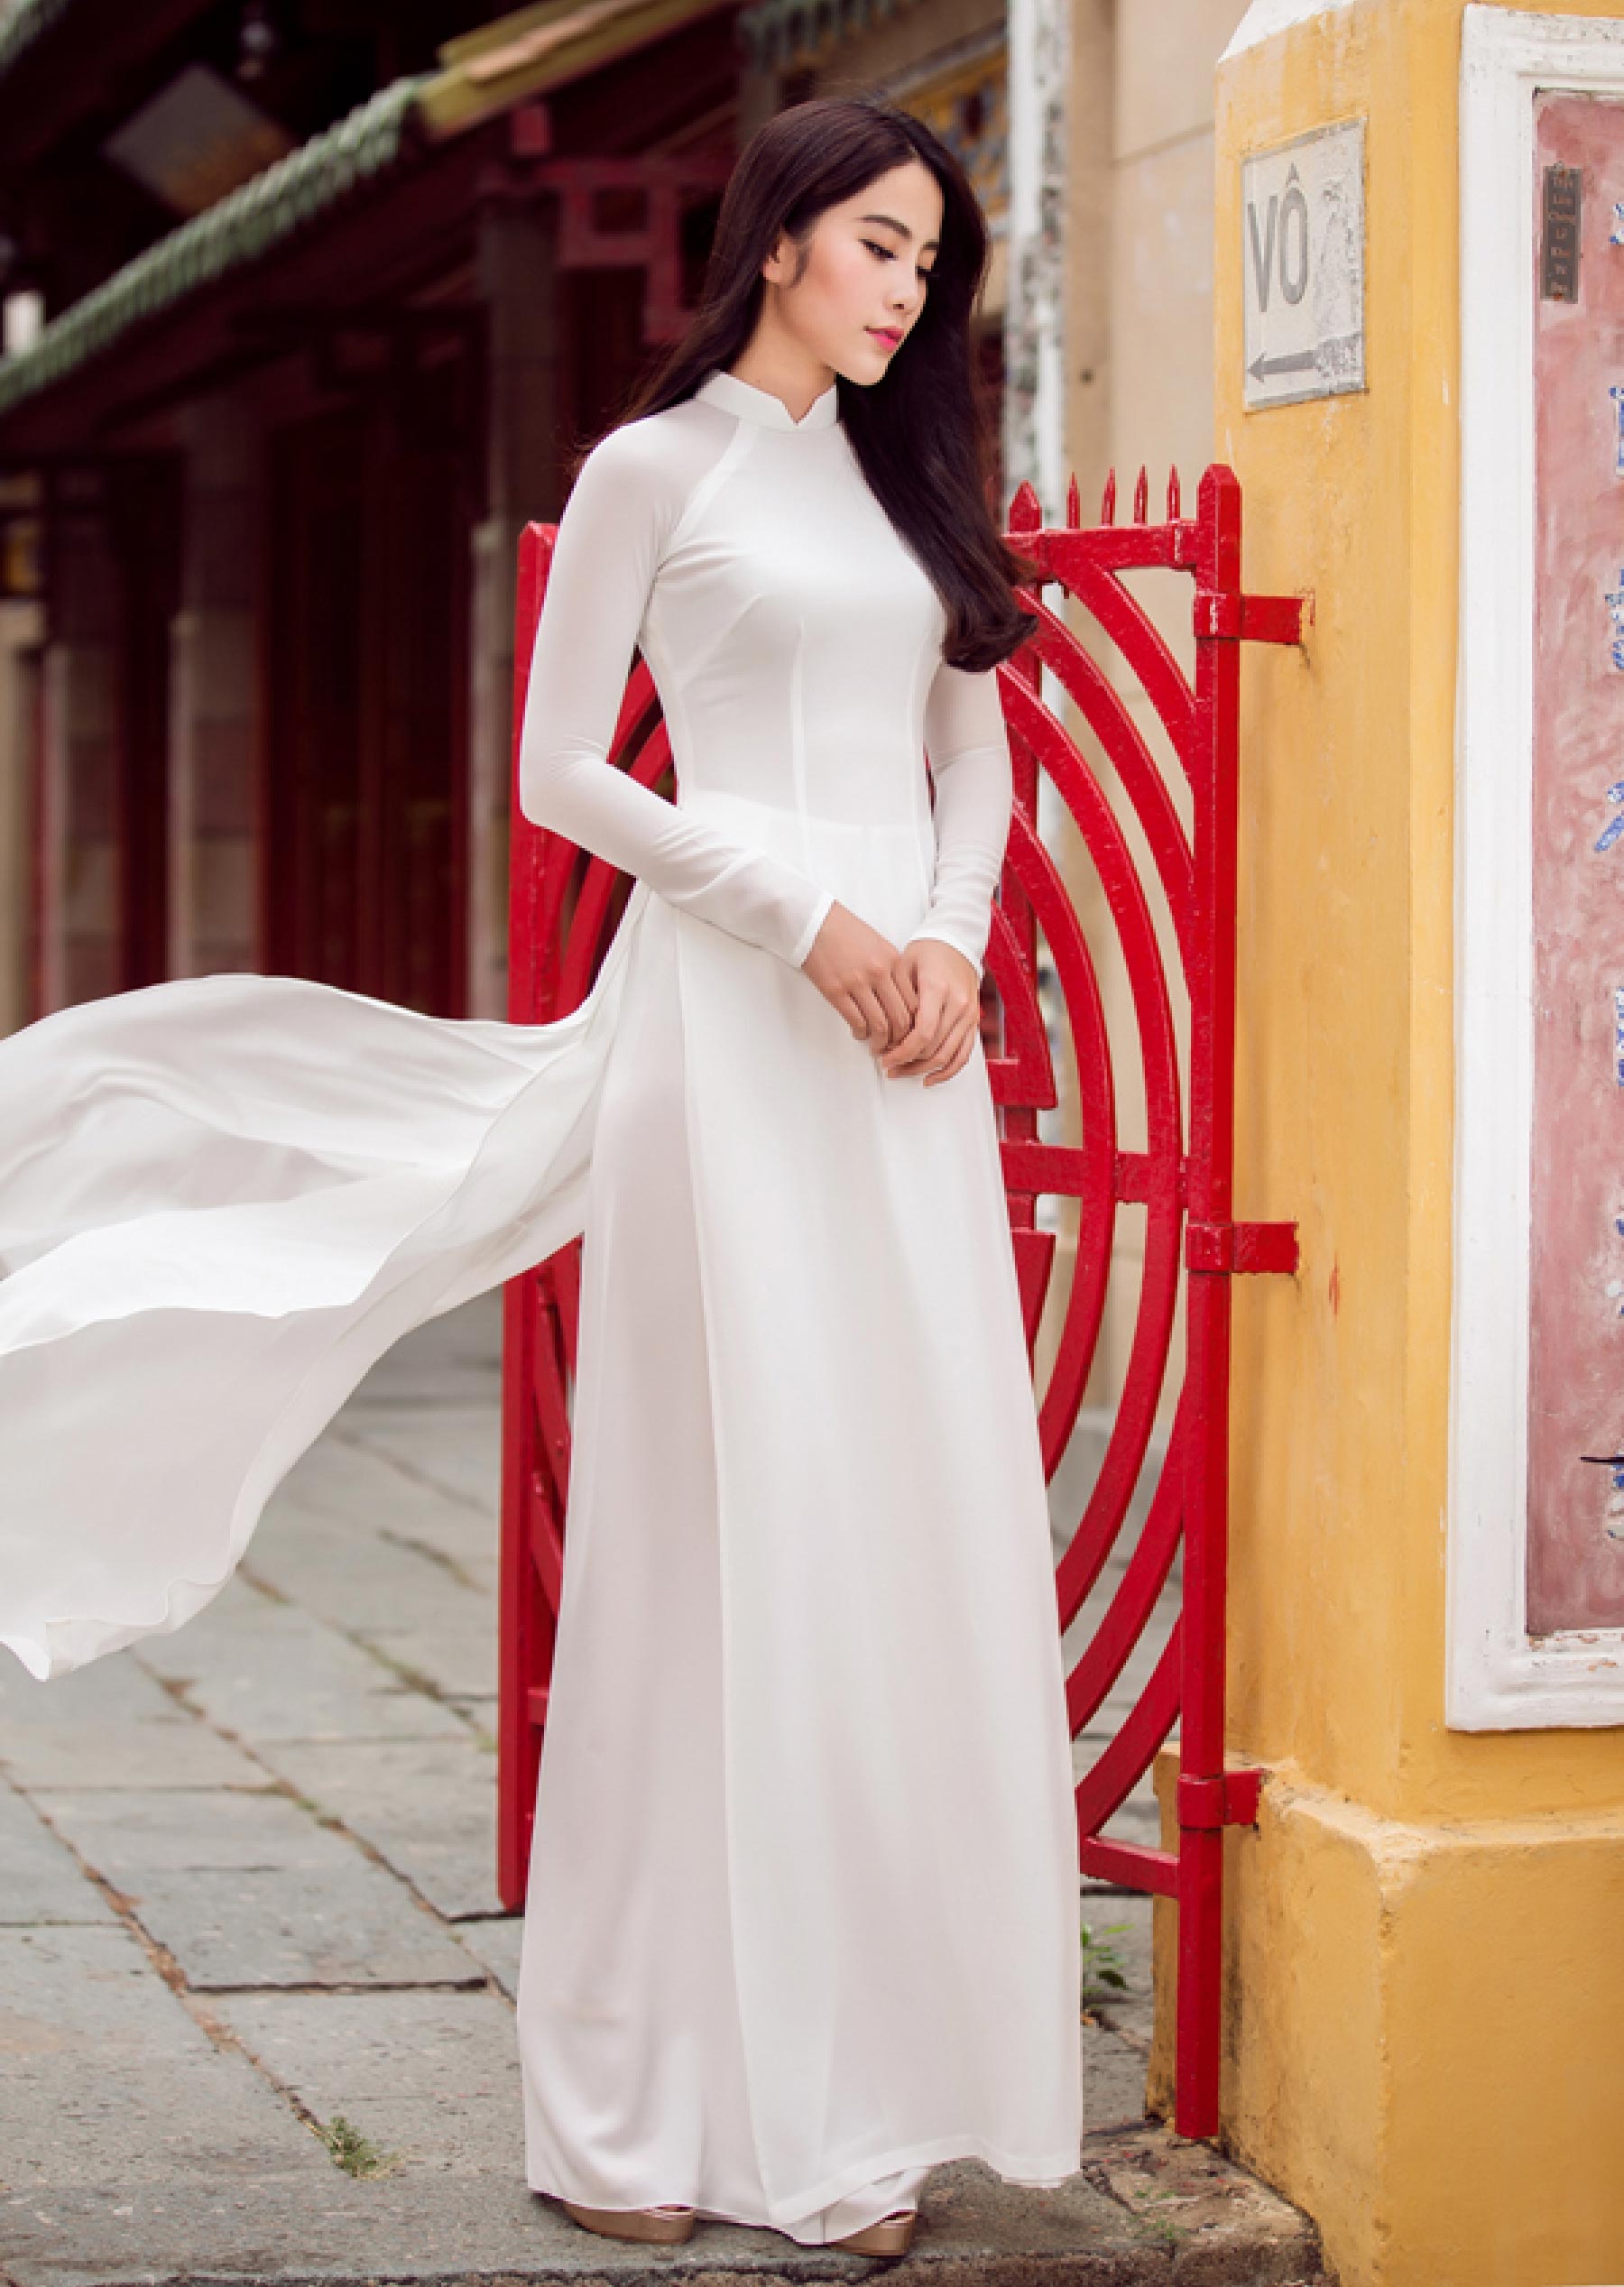 Áo dài là nét đẹp linh hồn của dân tộc Việt